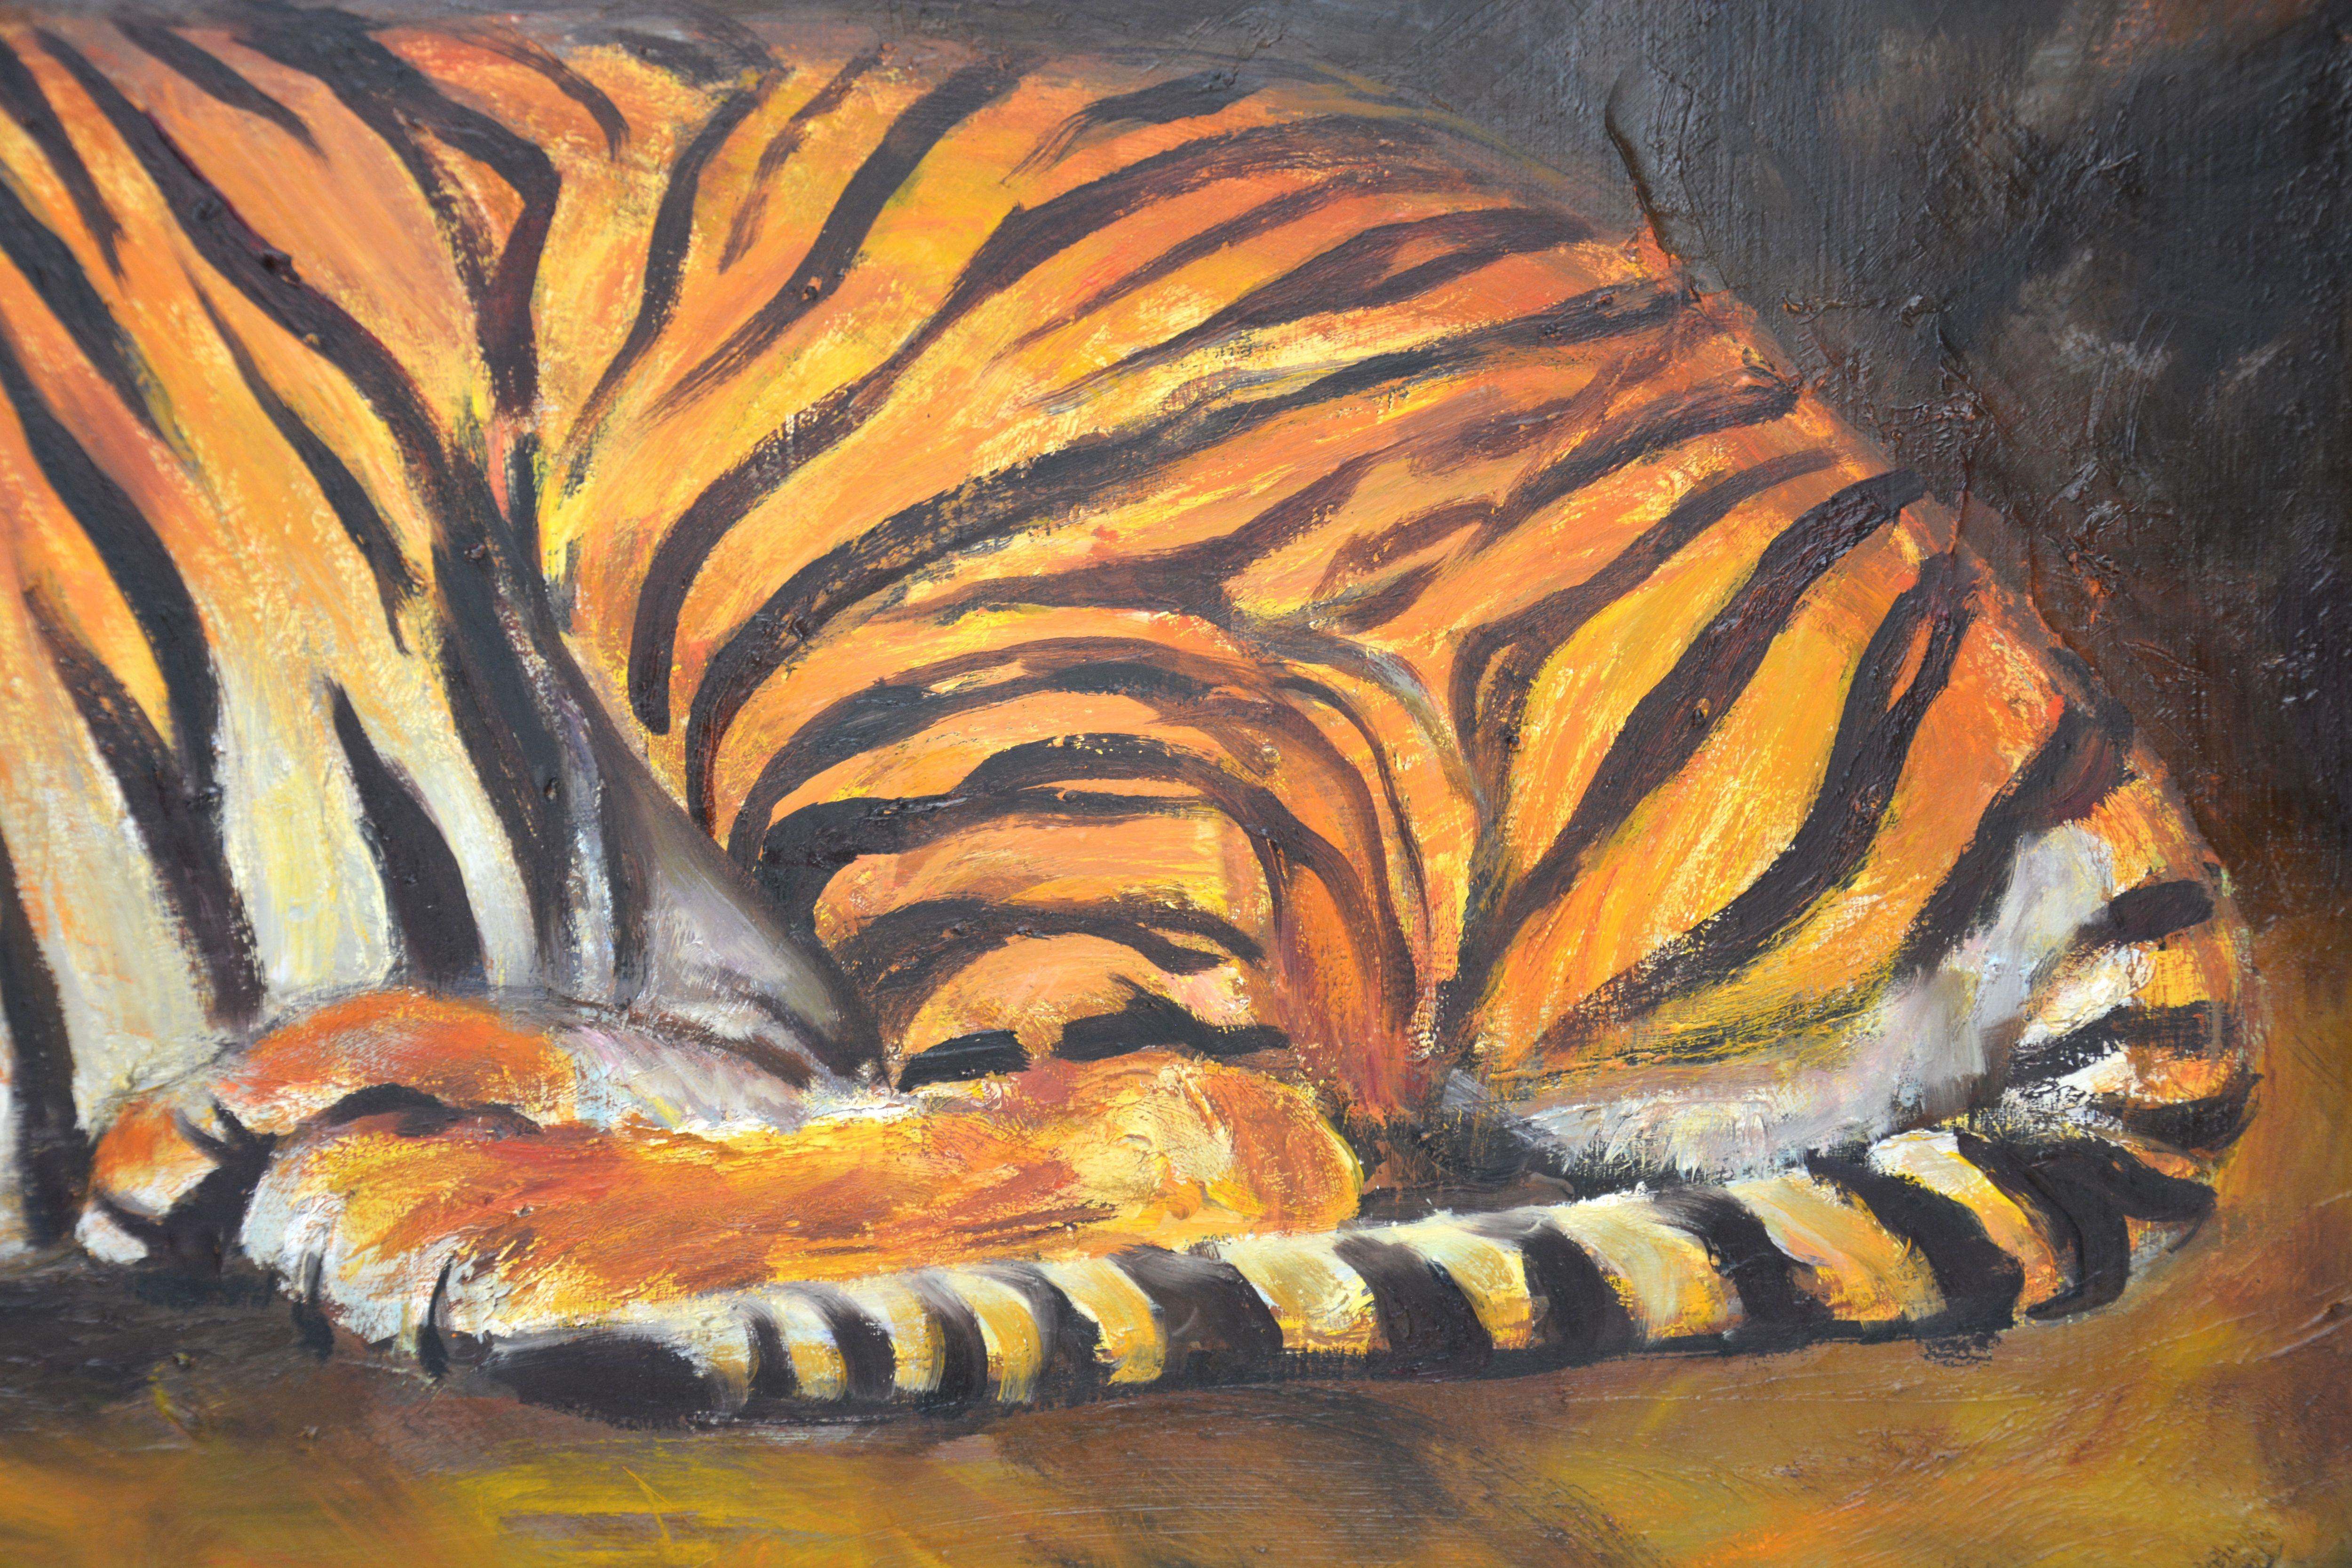 Tigre, prédateur, chasseur, peint dans le style impressionniste. Animal sur fond sombre. Œuvre originale, unique en son genre. Peinture à l'huile sur toile de lin, signée par l'artiste, les côtés sont peints dans la couleur du tableau, vernie, prête